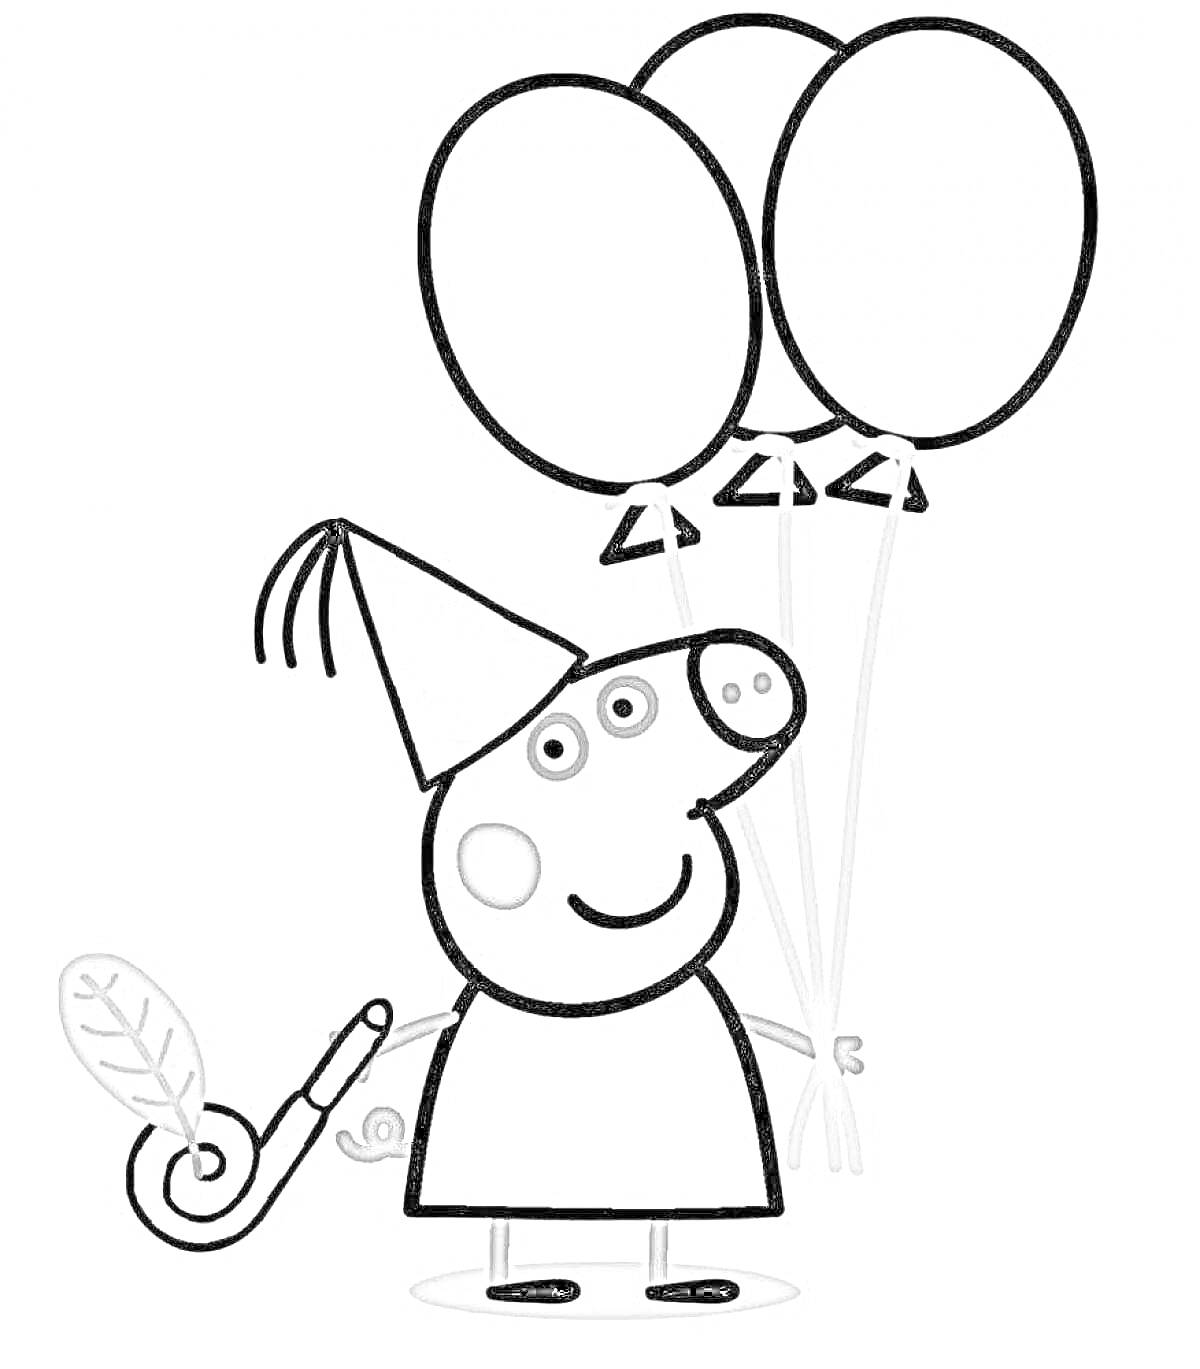 Раскраска Свинка Пеппа на празднике с шариками и дудочкой